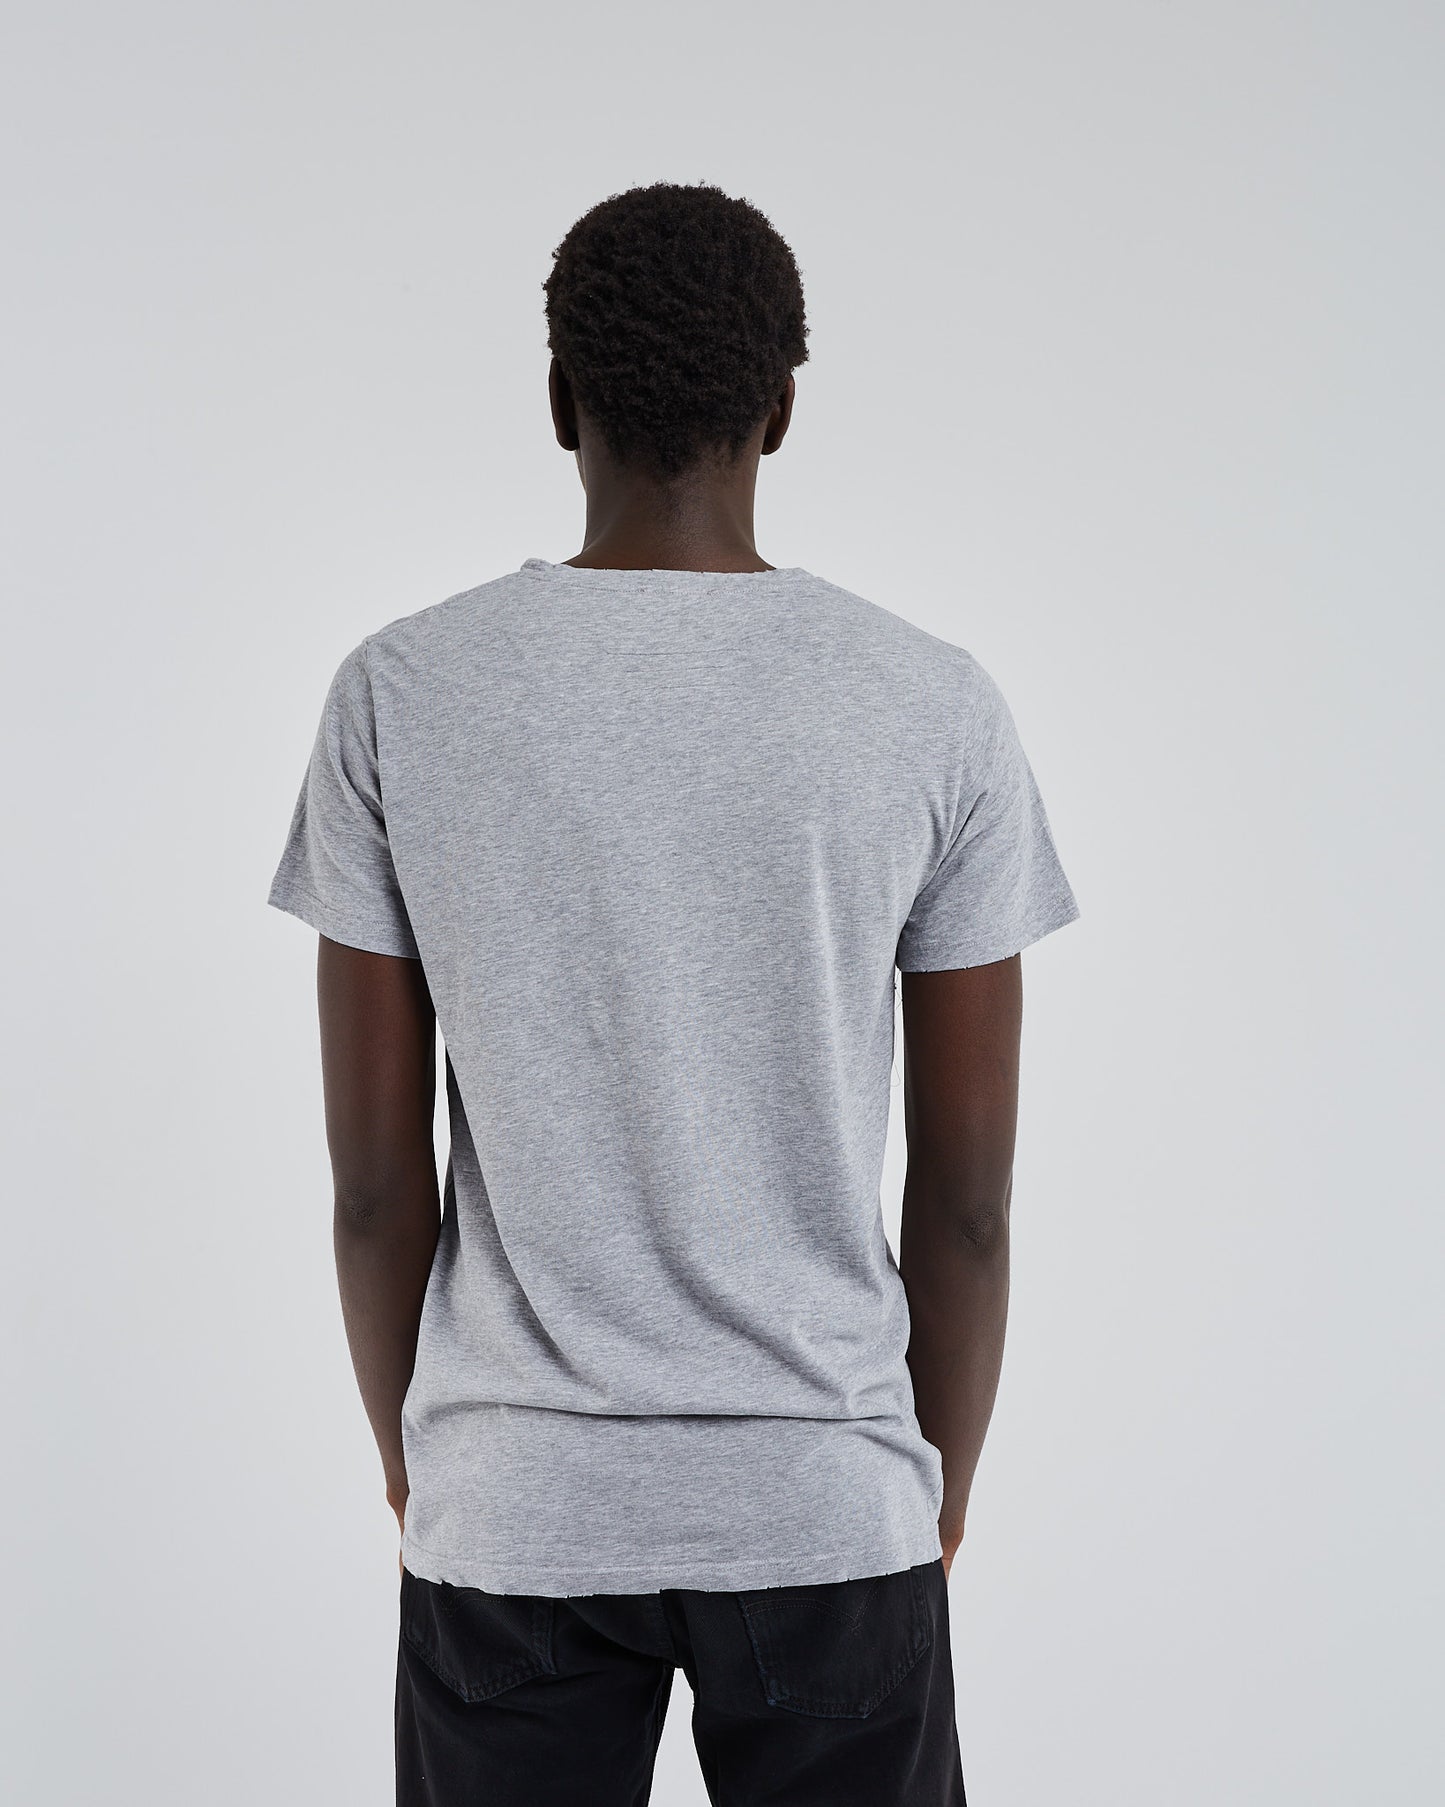 Grey printed t-shirt scheissegal